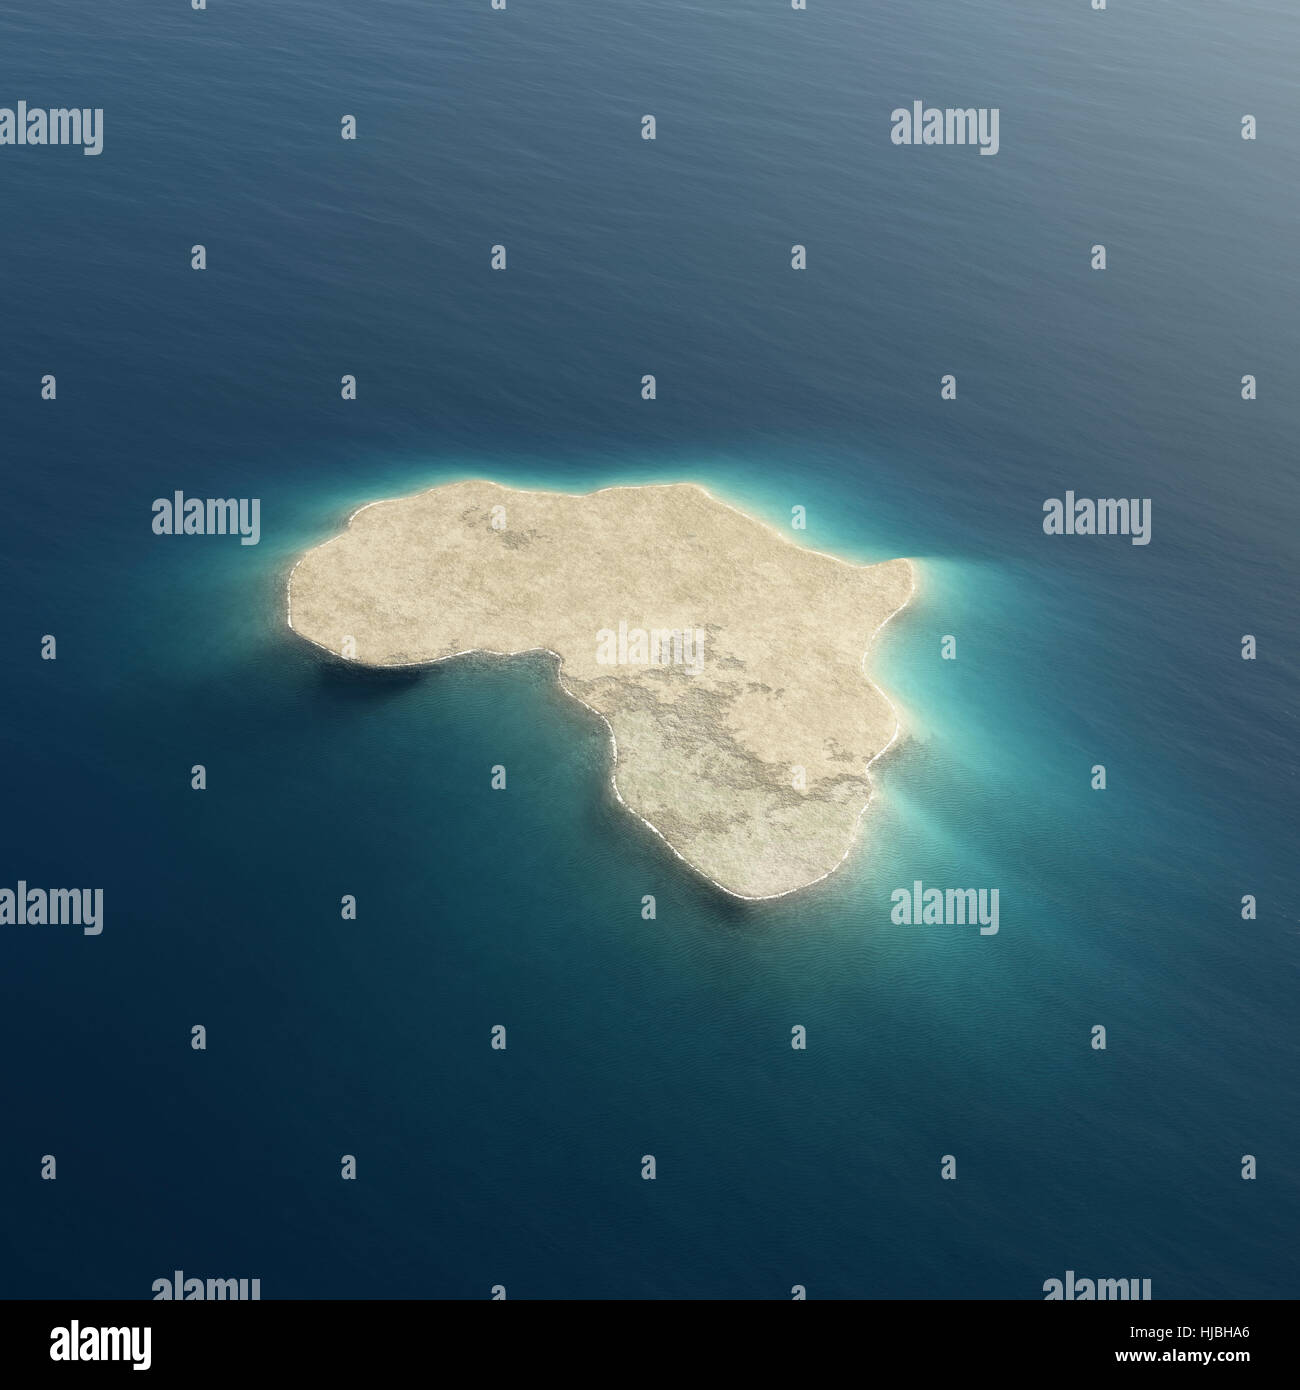 África se ilustra como una isla rodeada por aguas del océano tropical blue. Imagen de fondo conceptuales en 3D para su uso en diseños Foto de stock